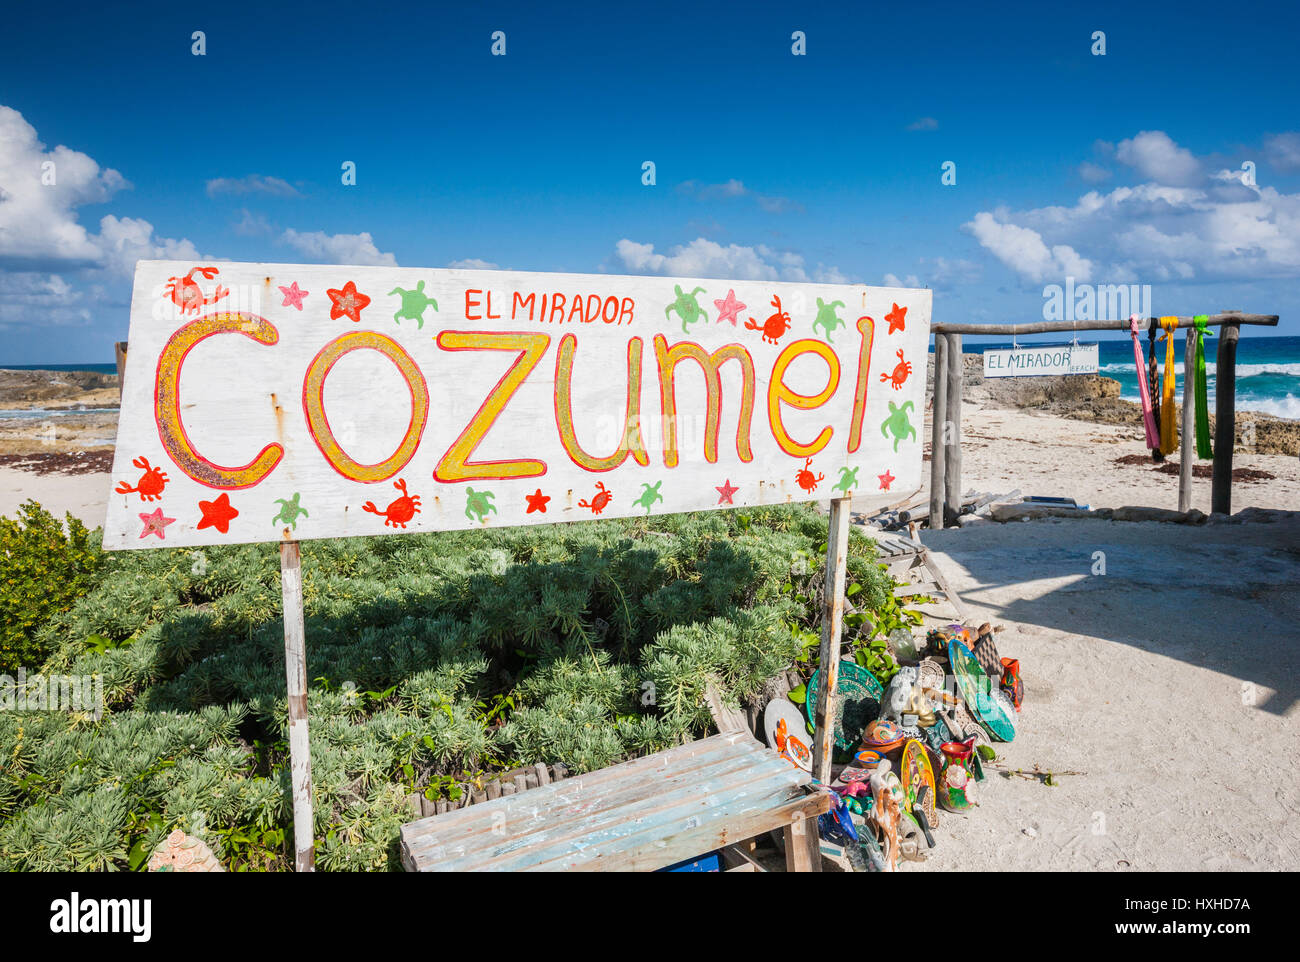 Signe de la plage El Mirodor beach sur Cozumel Banque D'Images